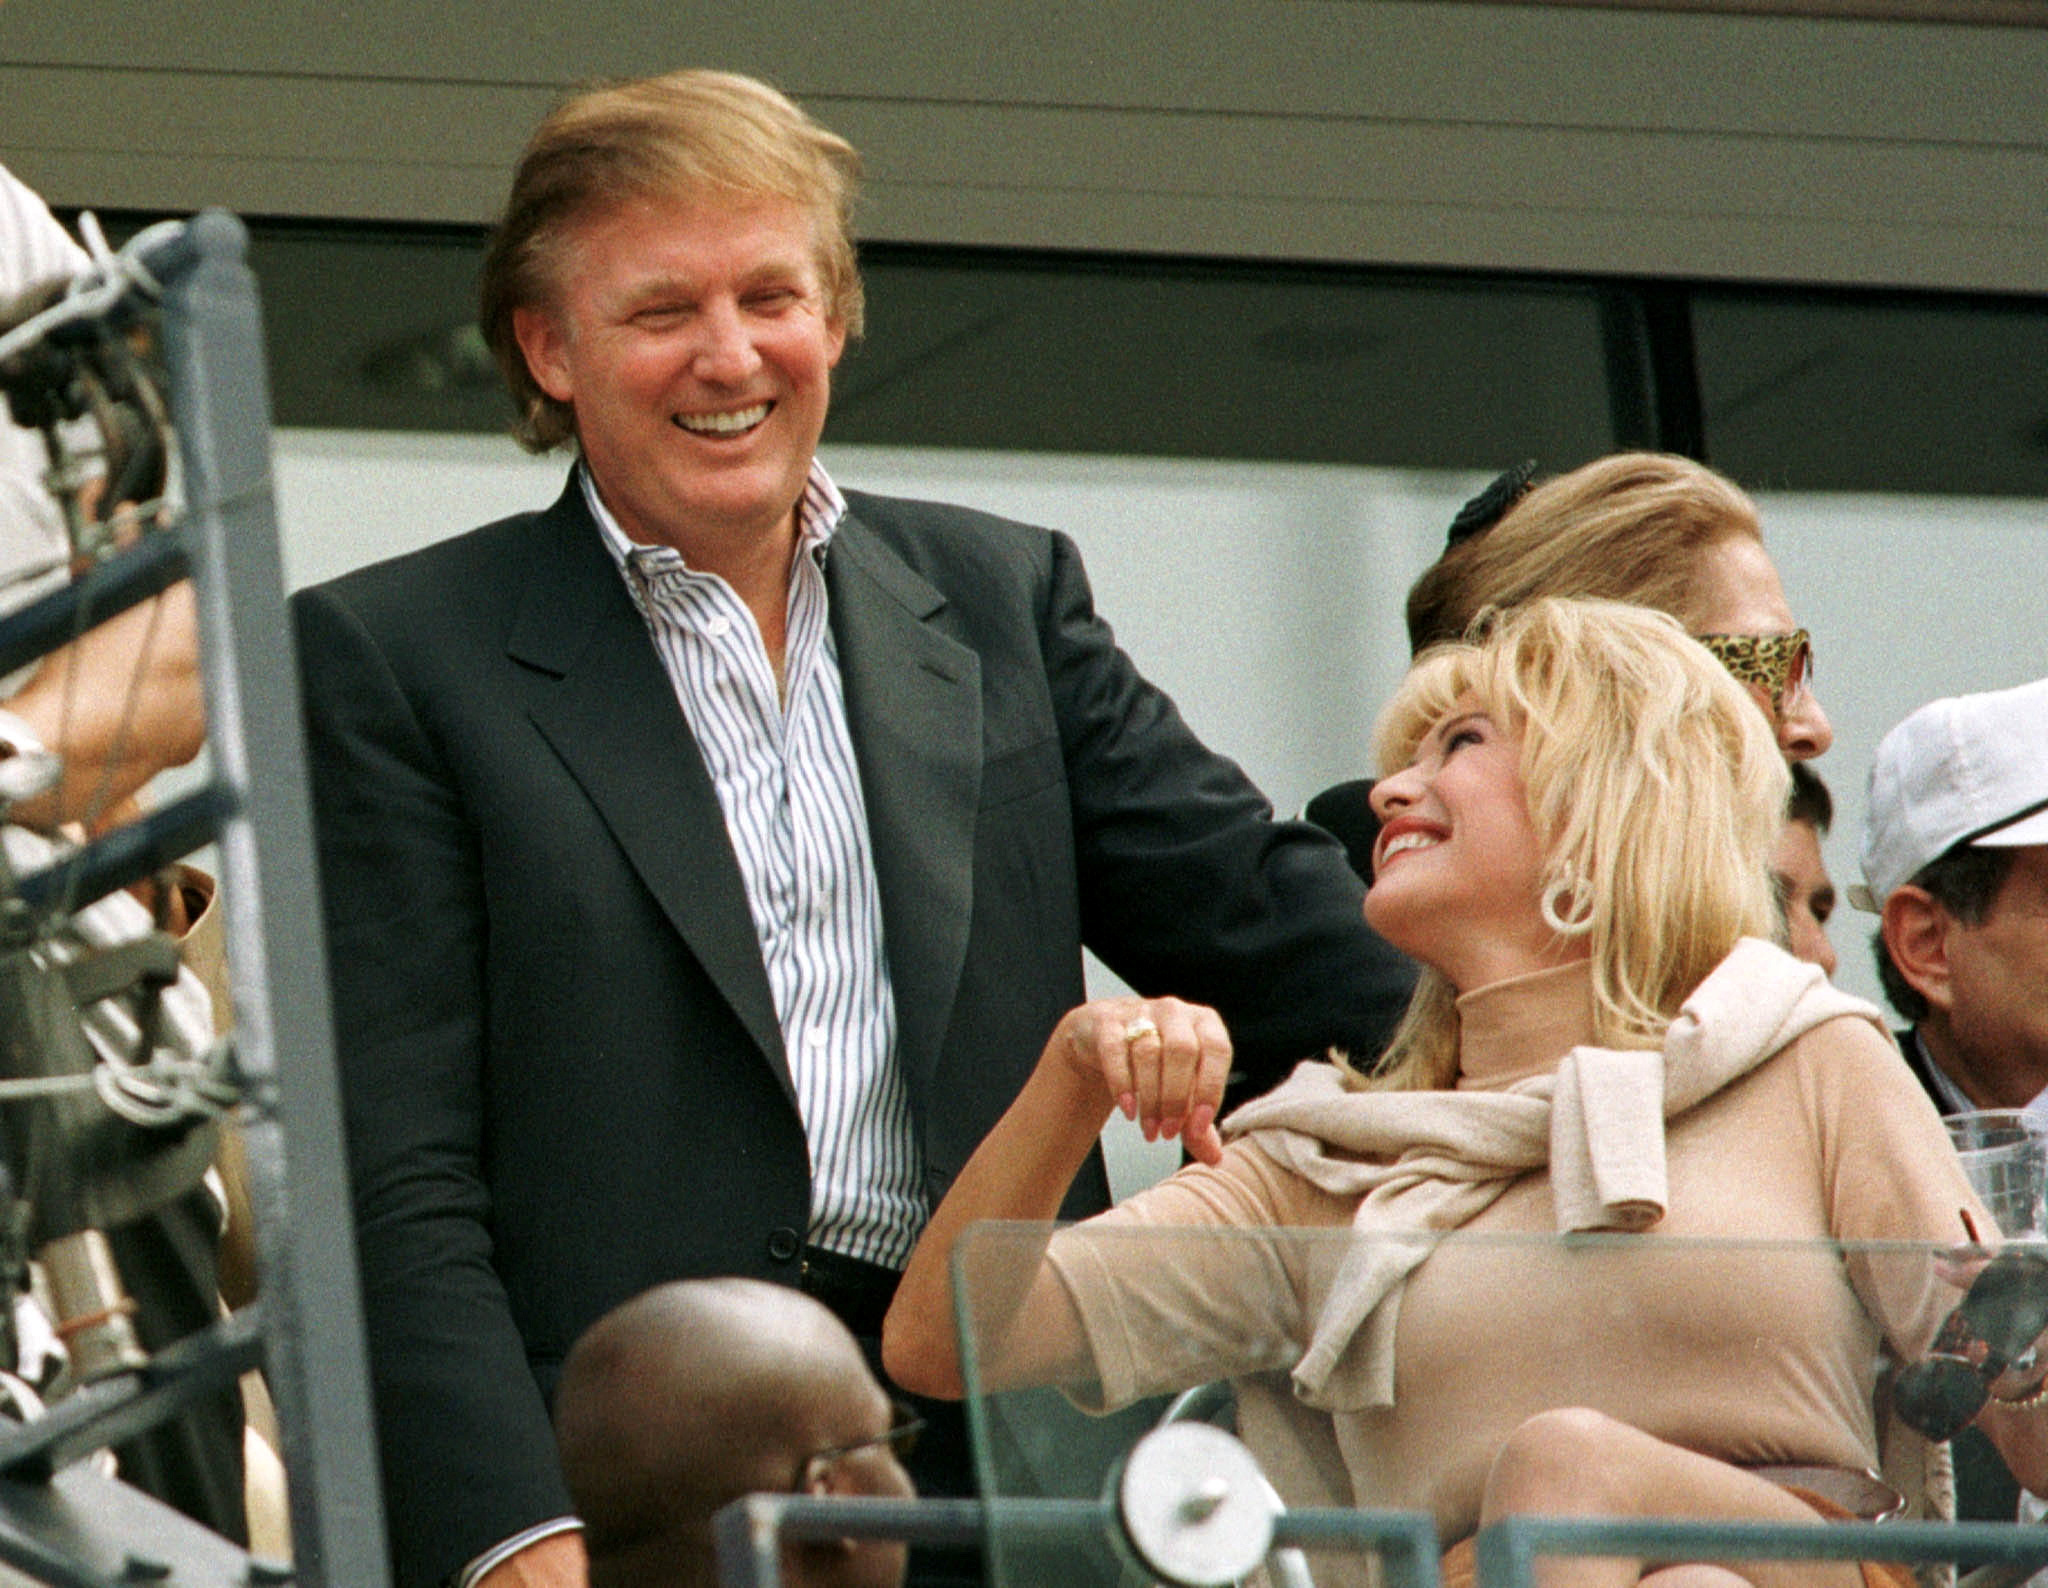 Foto de archivo: Donald Trump junto a Ivana Trump en 1997 (REUTERS/Mike Blake)